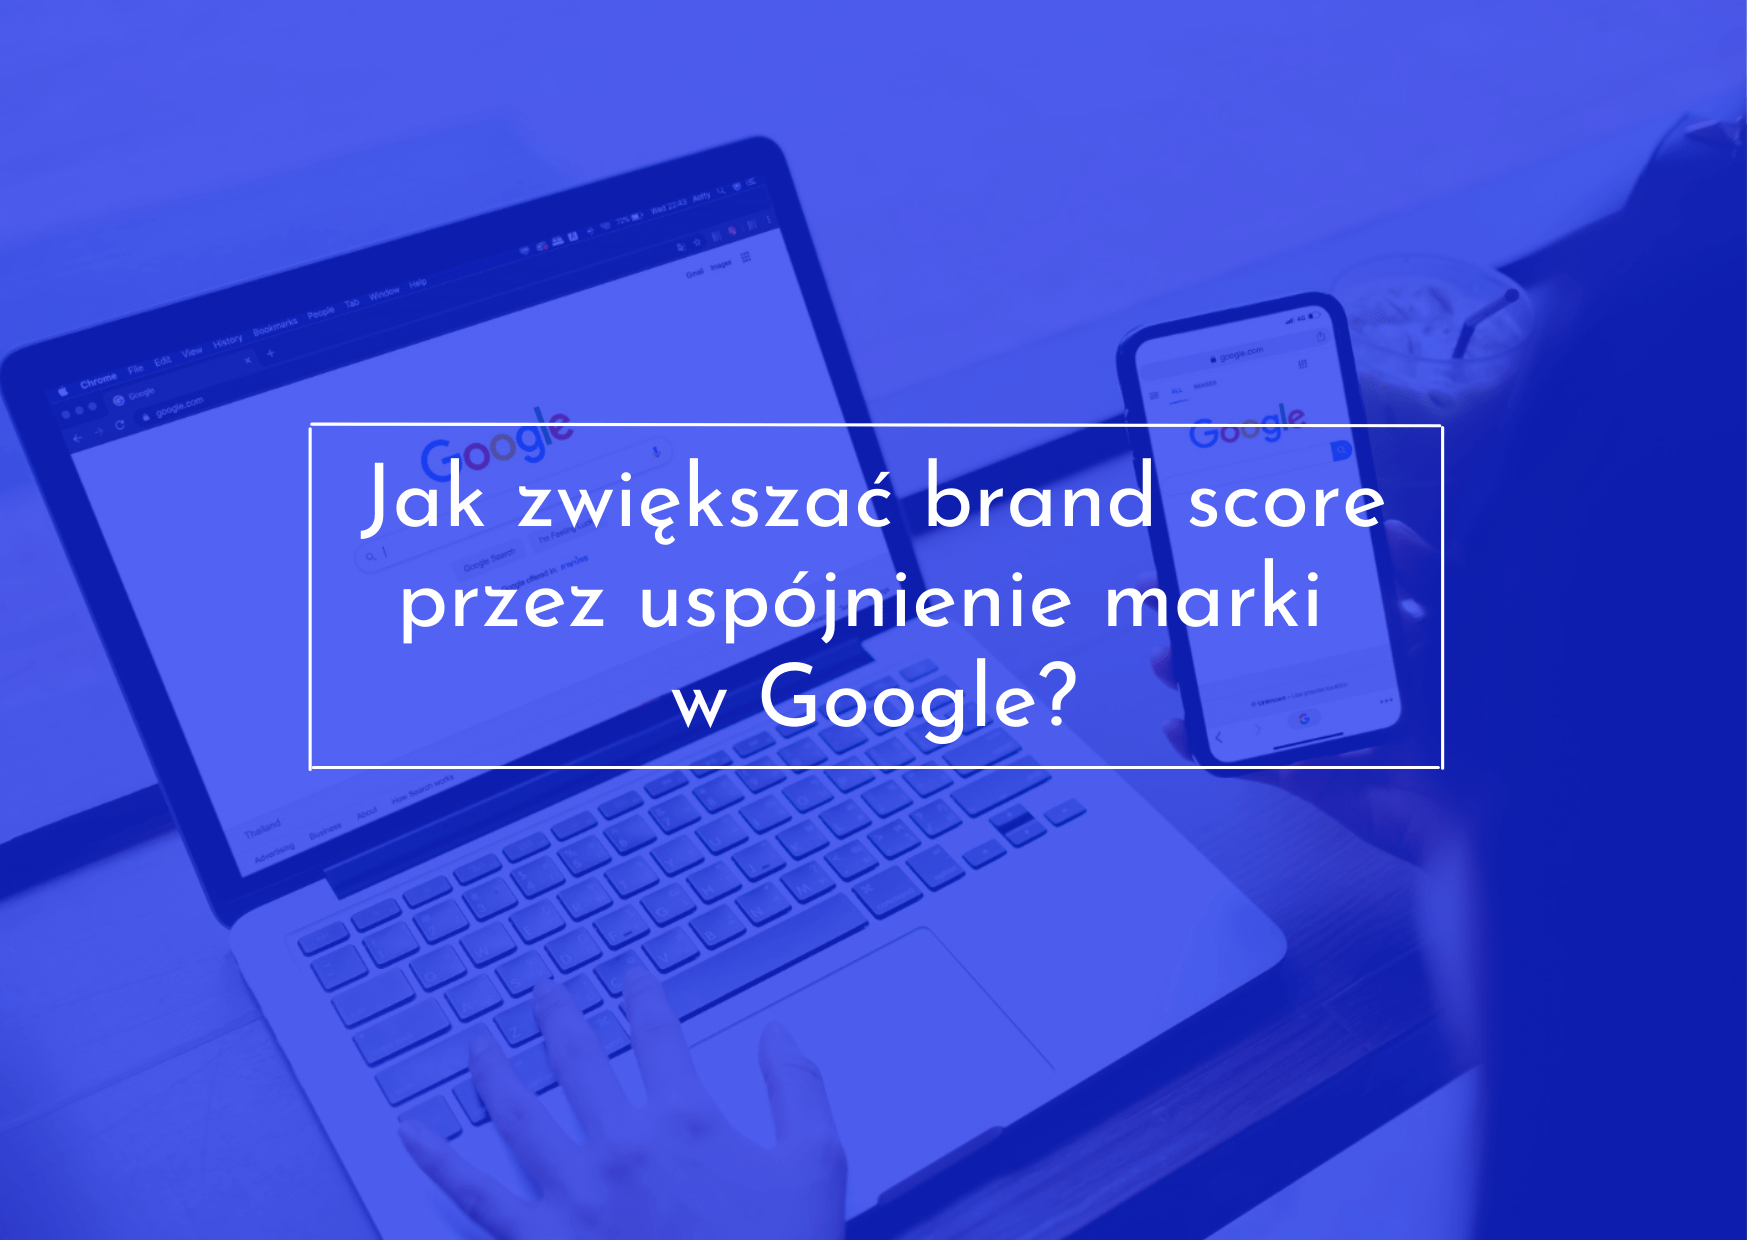 Zwiększenie brand score poprzez ujednolicenie marki w Google